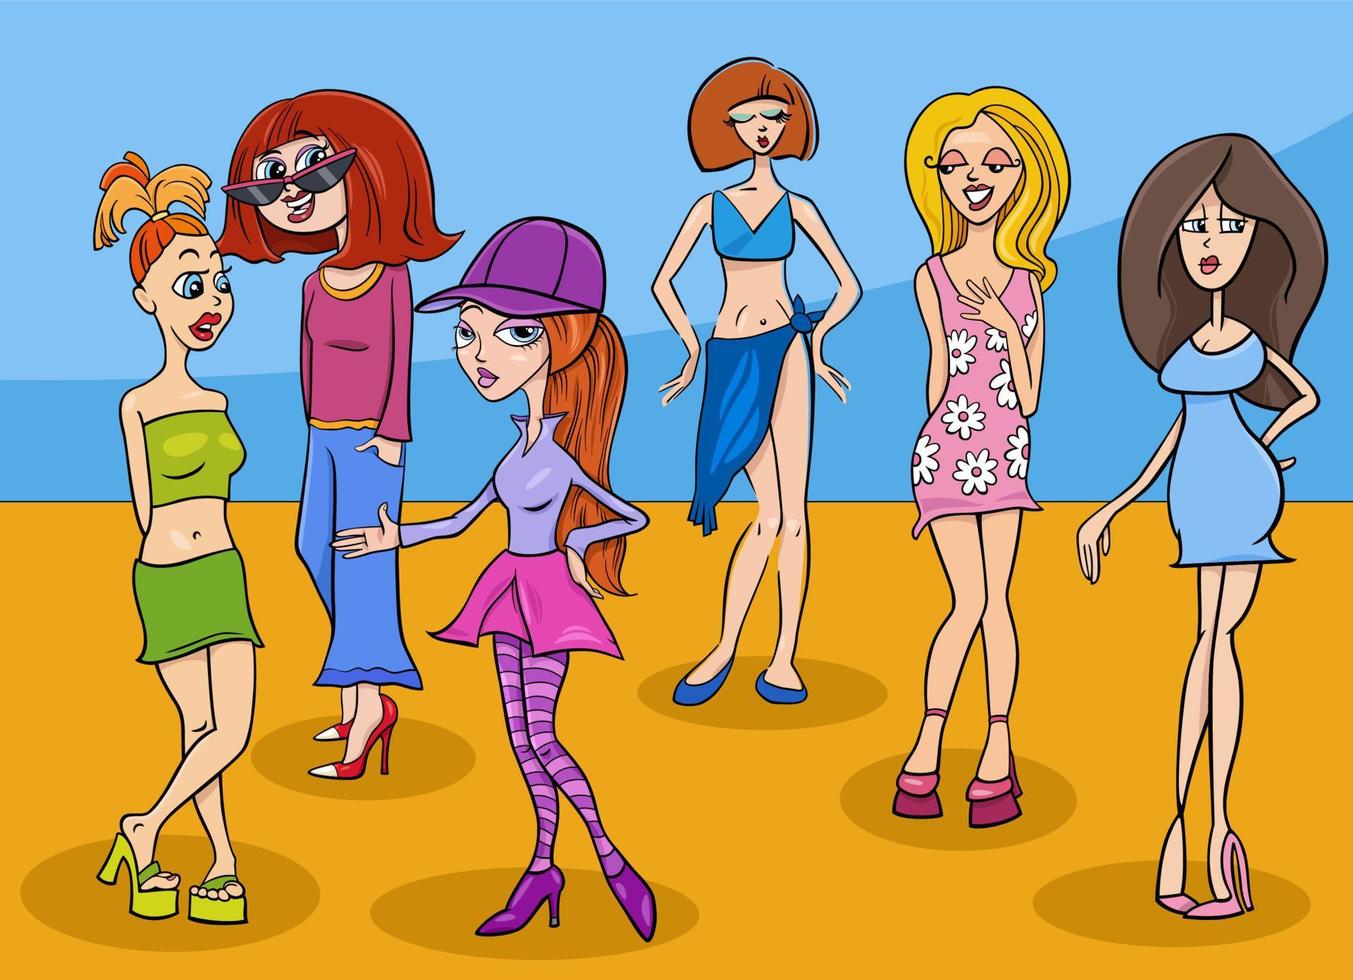 grupo de personagens de meninas ou mulheres engraçadas dos desenhos animados vetor